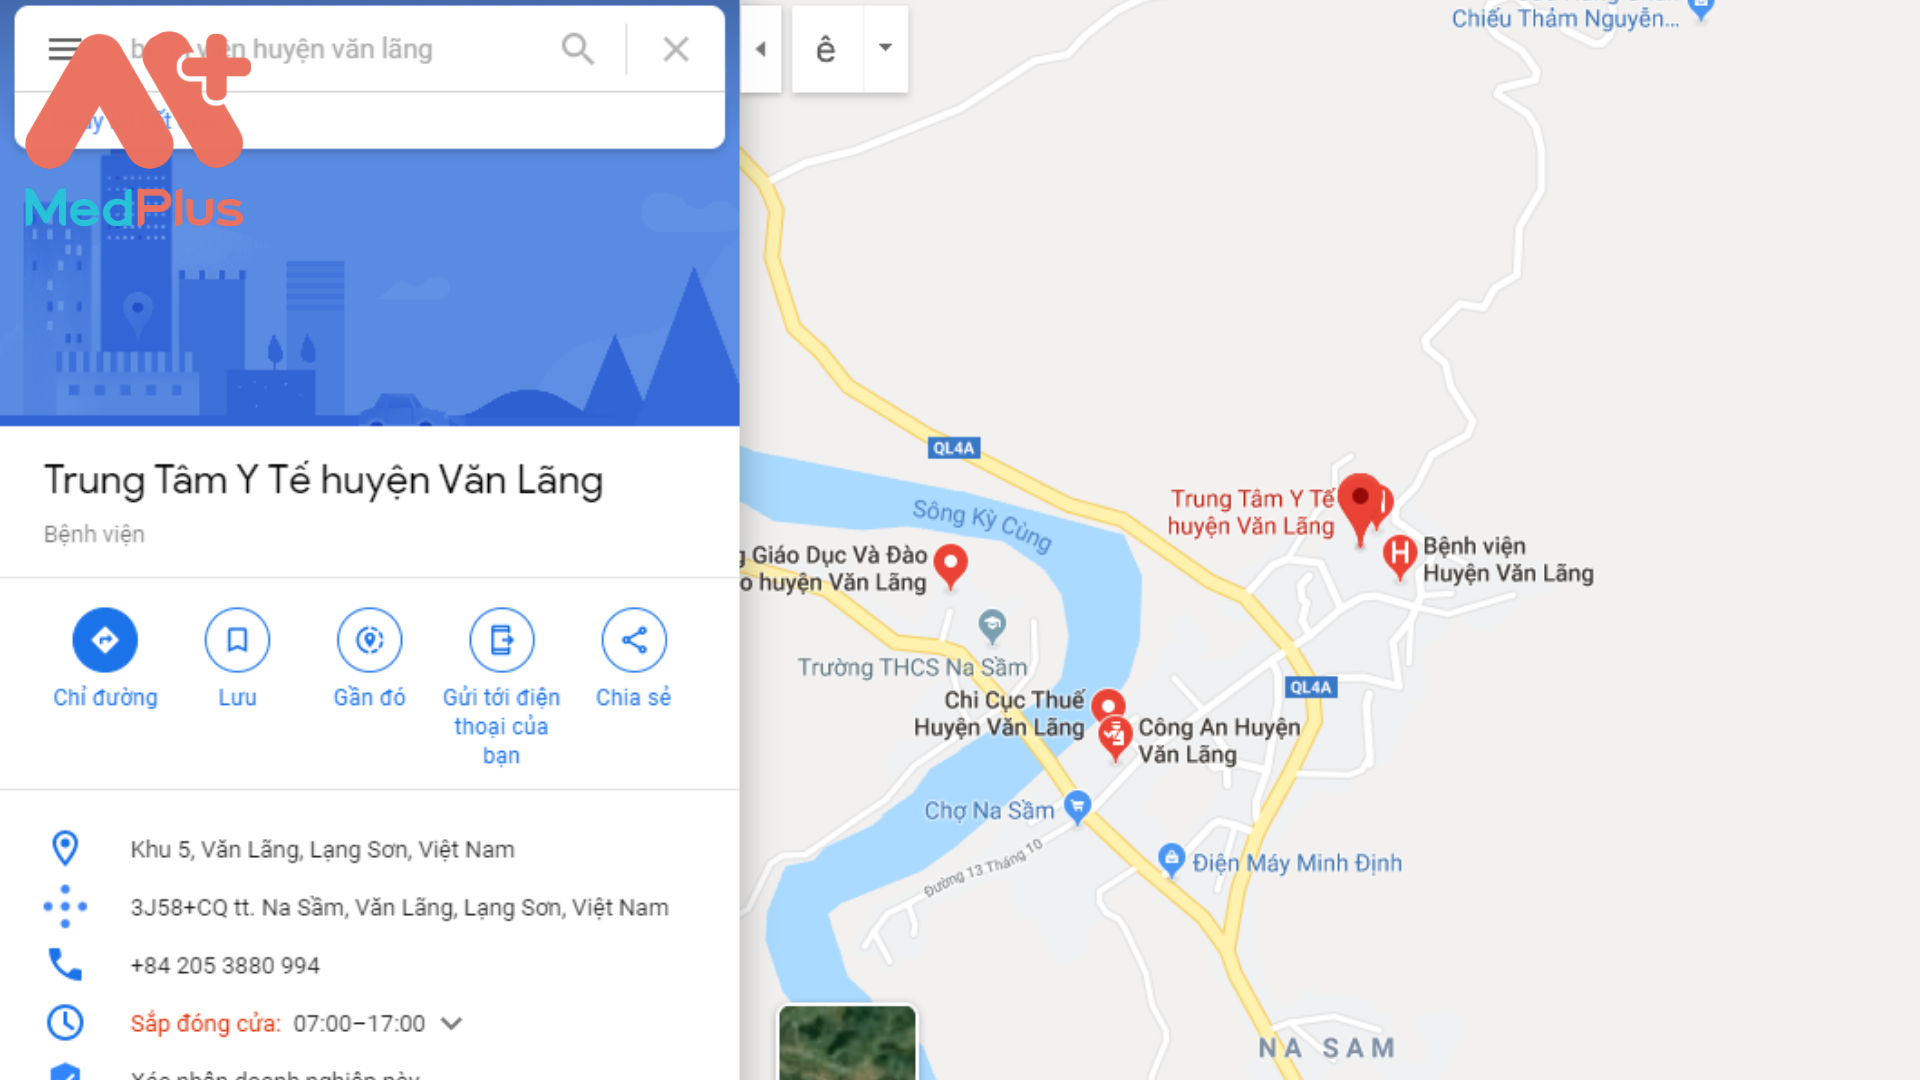 Địa chỉ bệnh viện huyện Văn Lãng - Bắc Giang